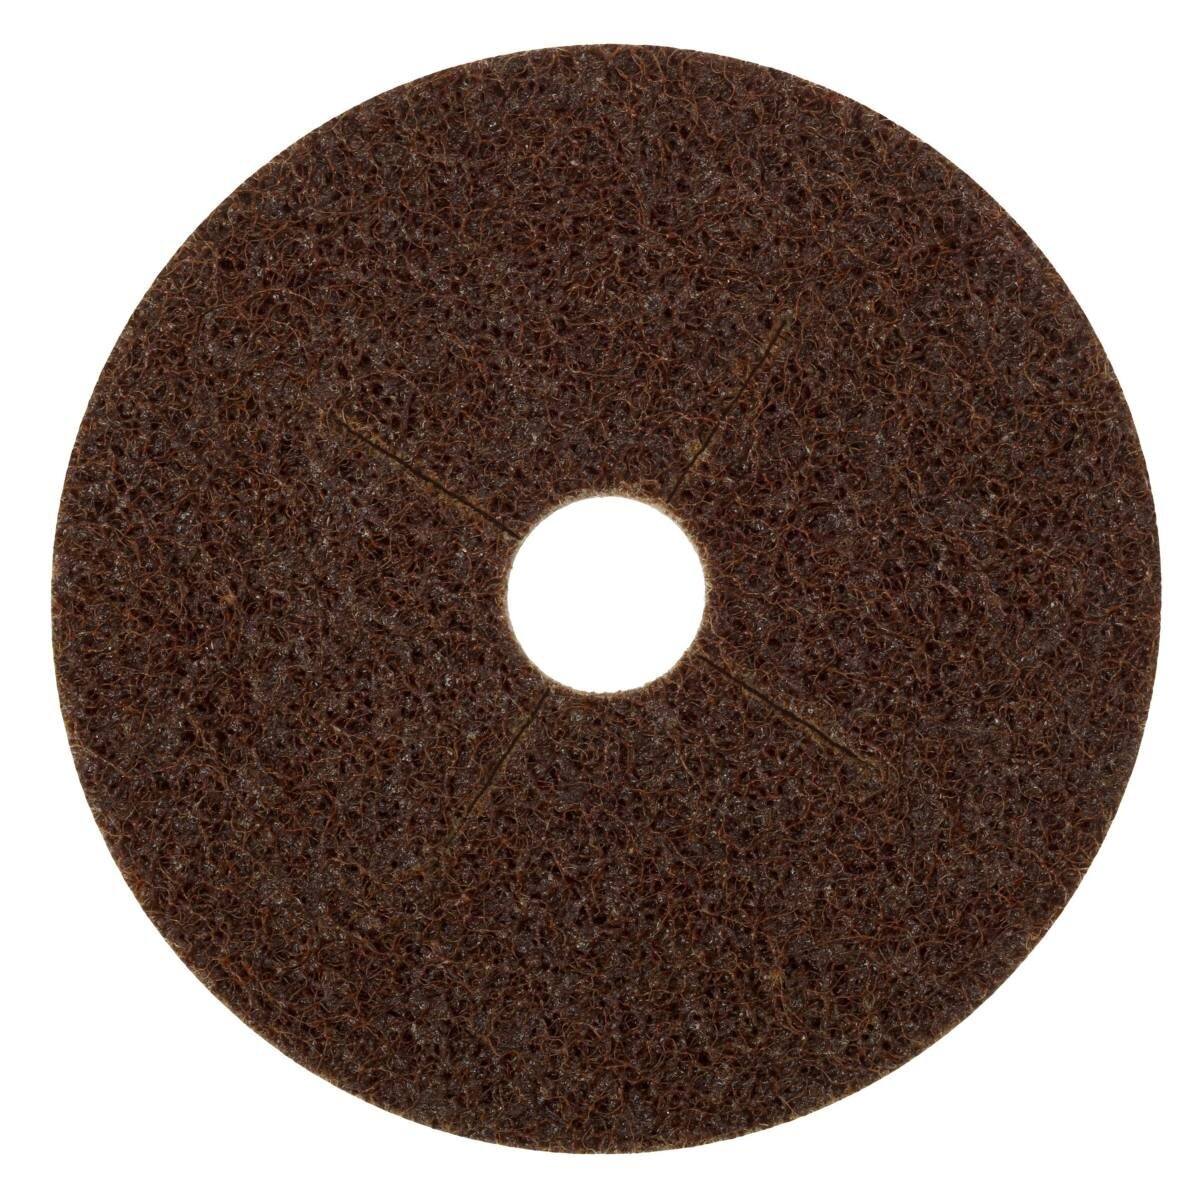 3M Scotch-Brite disco no tejido SC-DB con soporte de fibra, 125 mm, 22 mm, A, grueso #65332